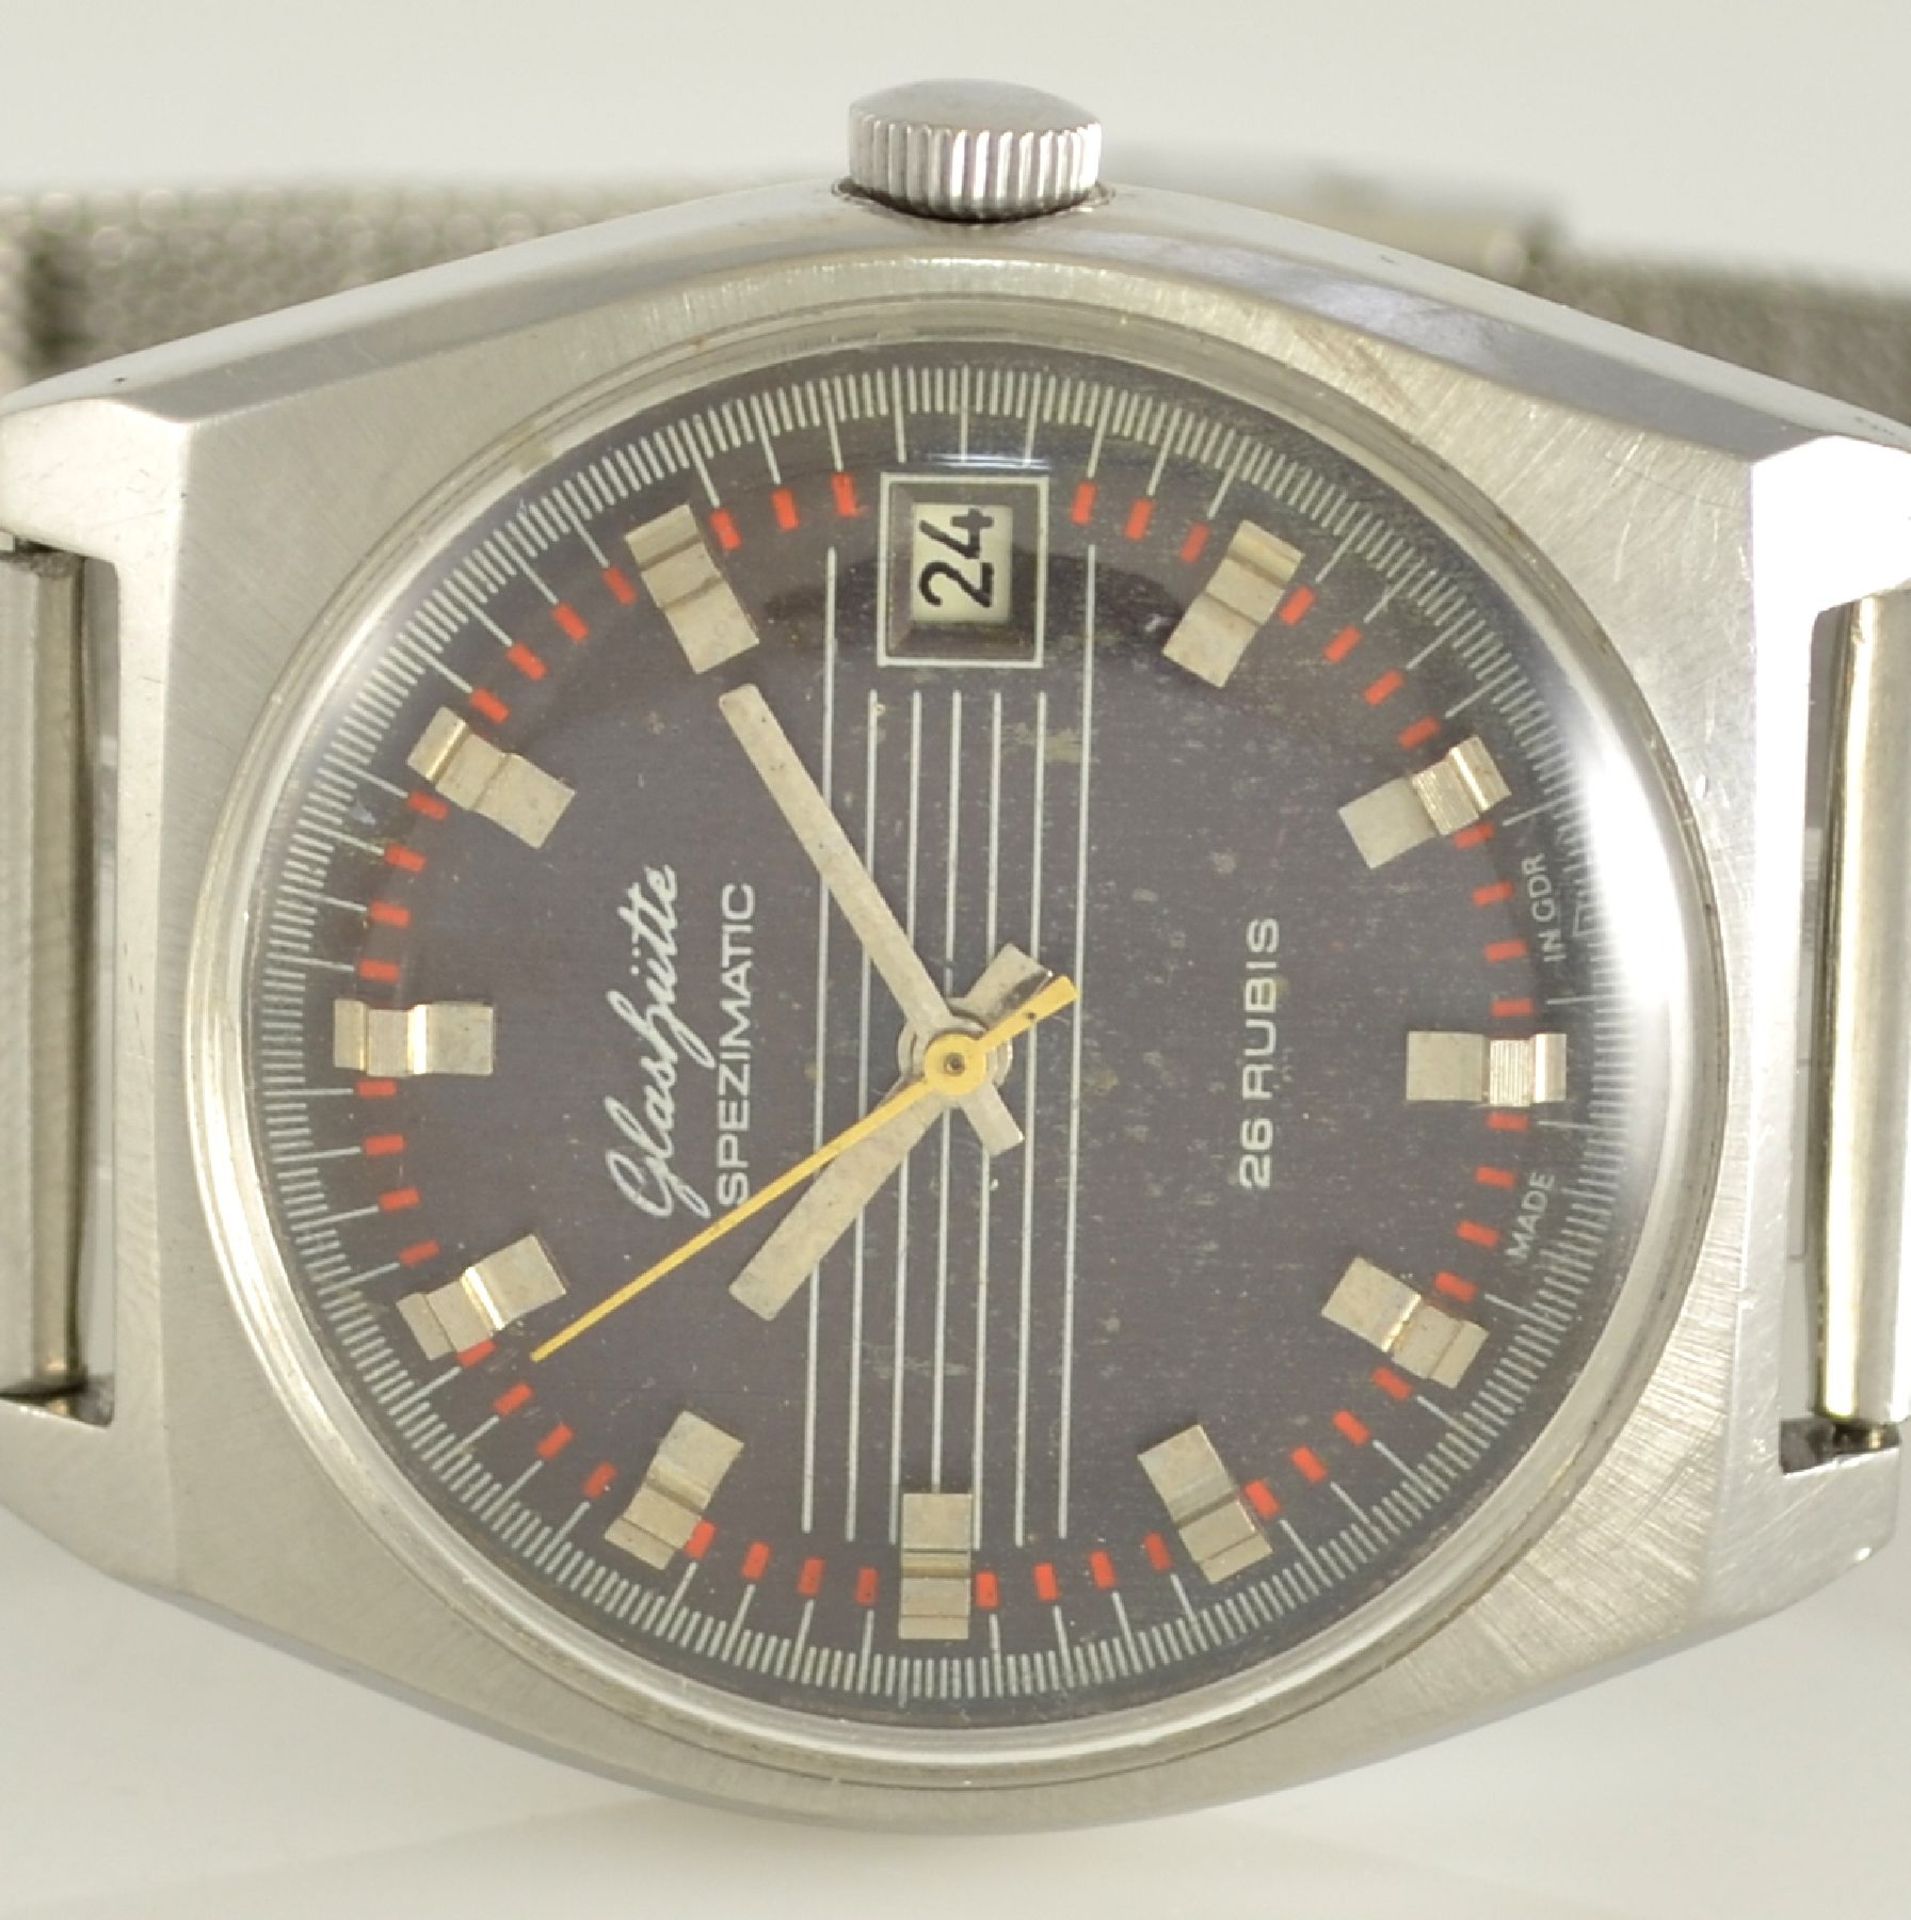 GLASHÜTTE Armbanduhr Spezimatic in Edelstahl, Automatik, DDR um 1970, Boden aufgedr., ausgef. - Bild 2 aus 6